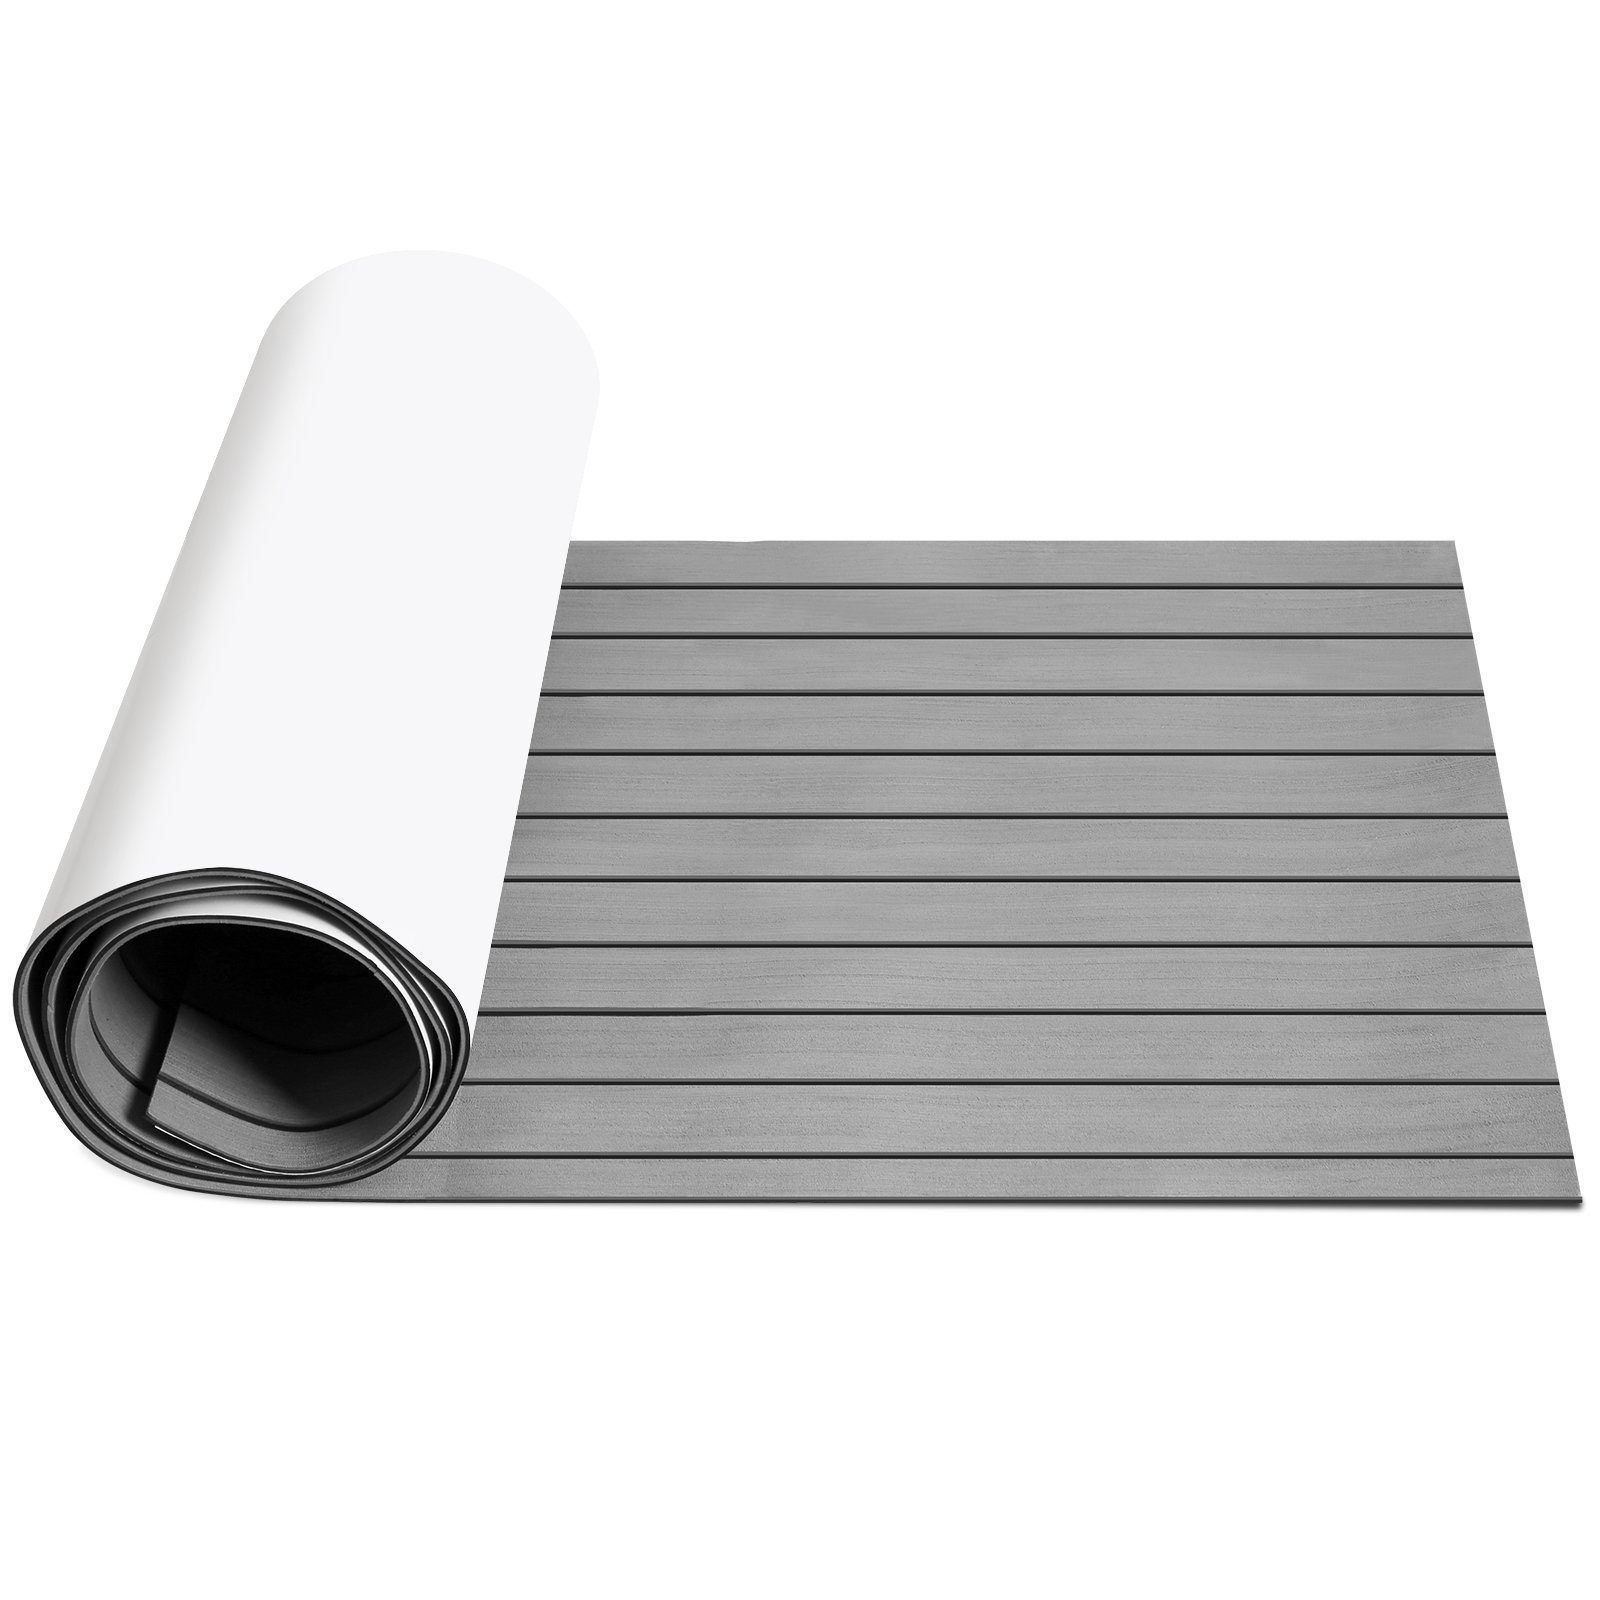 100 % Qualitätsgarantie Gimisgu Bodenmatte Deck Teak Matte EVA Bodenmatte Schaum Bodenbelag Anti-Rutsch Teppich